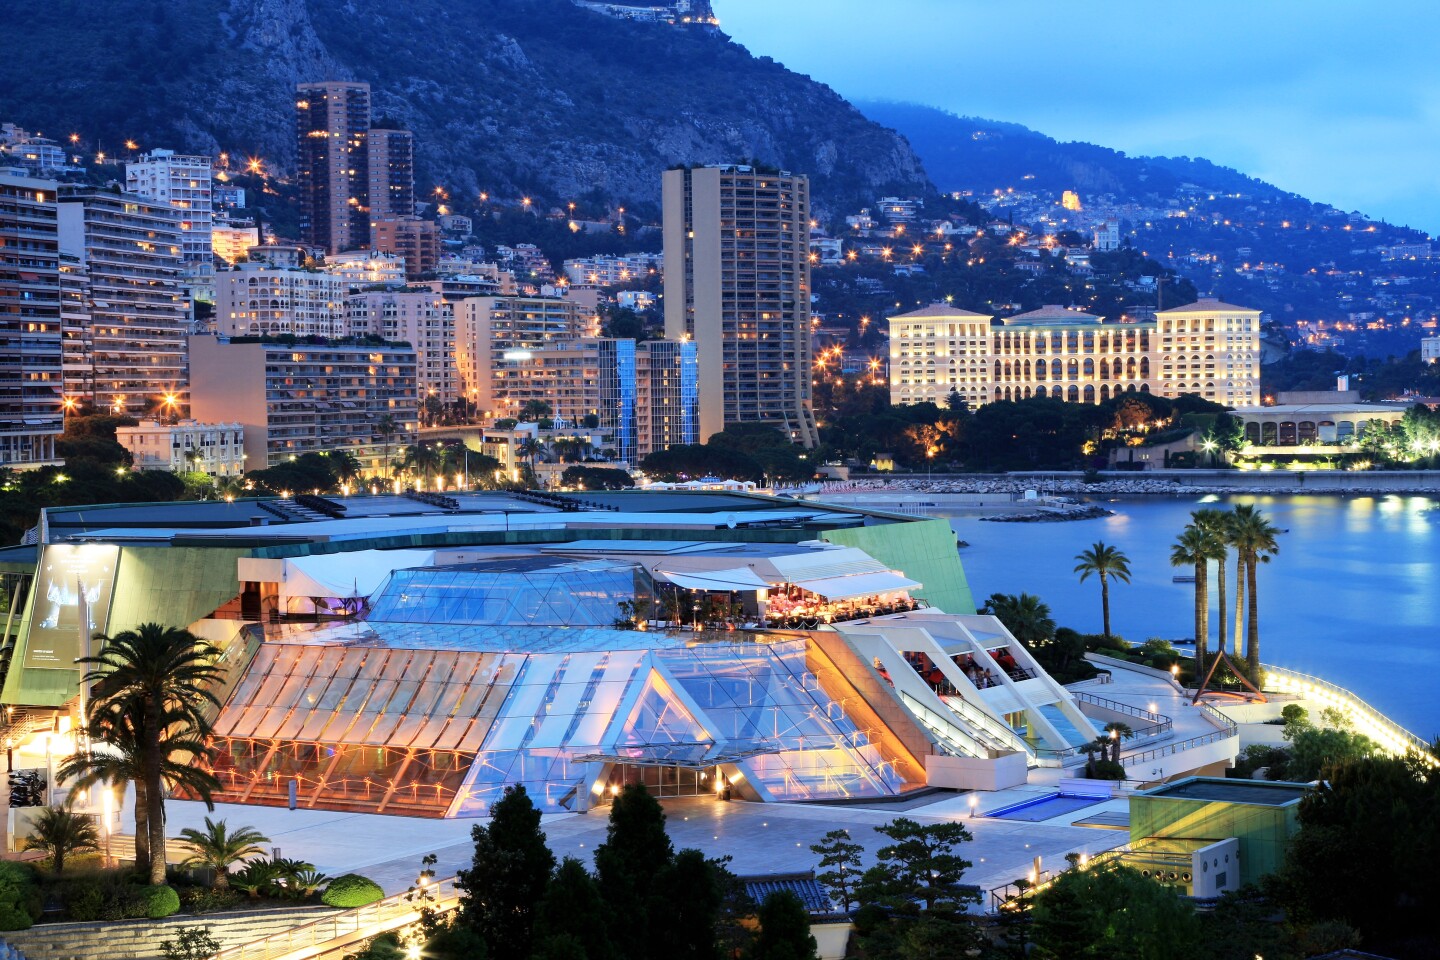 Grimaldi Forum, located in Larvotto Monaco. Convention center and theater in Monaco